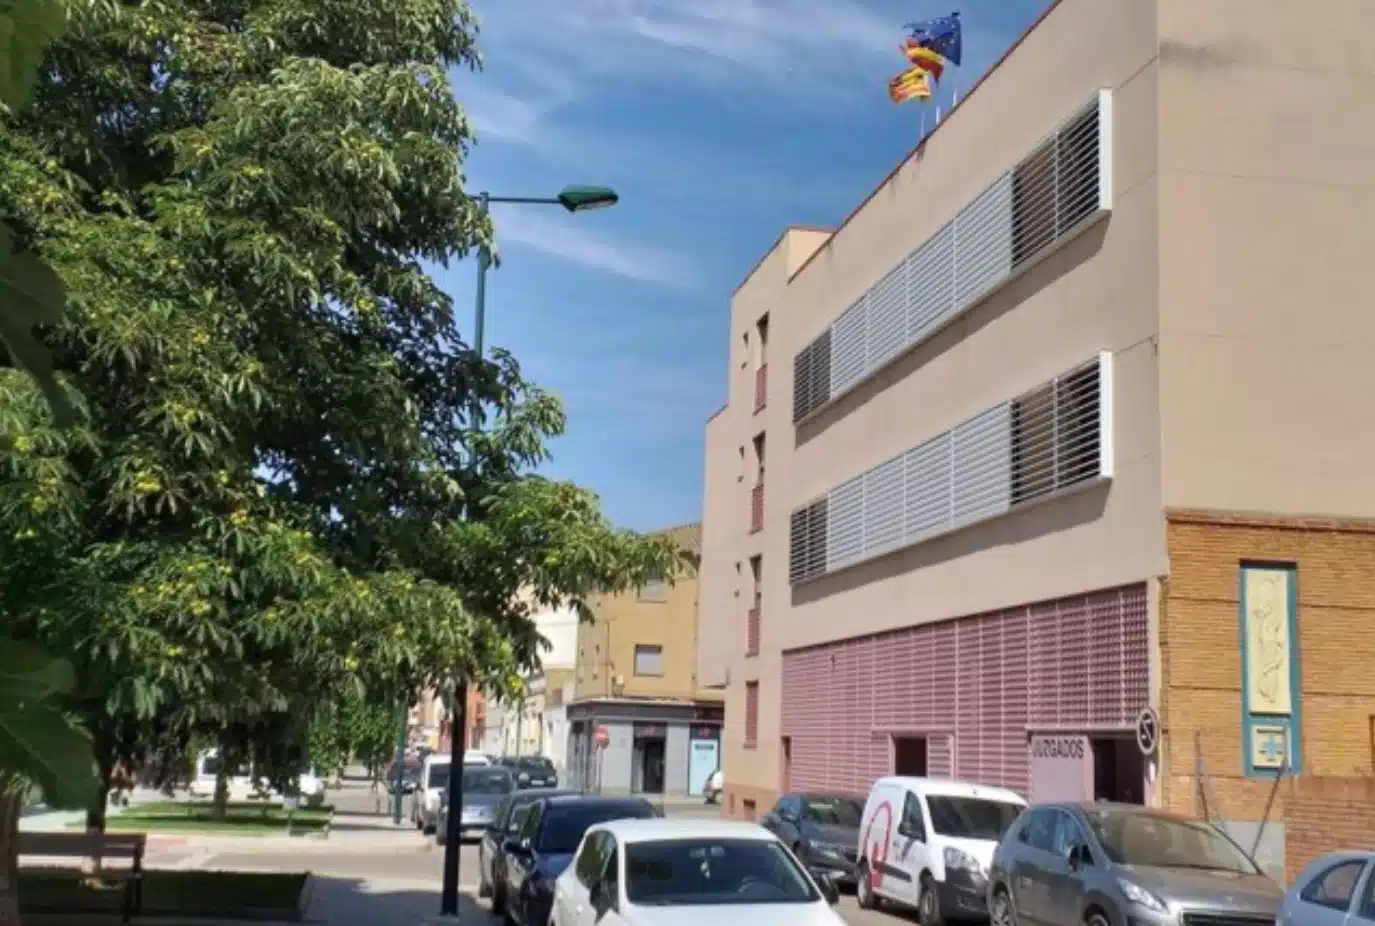 Un abogado solicita la suspensión de una vista en Zaragoza porque tenía otra en Logroño y le contestan que son 140 kilómetros y que le da tiempo